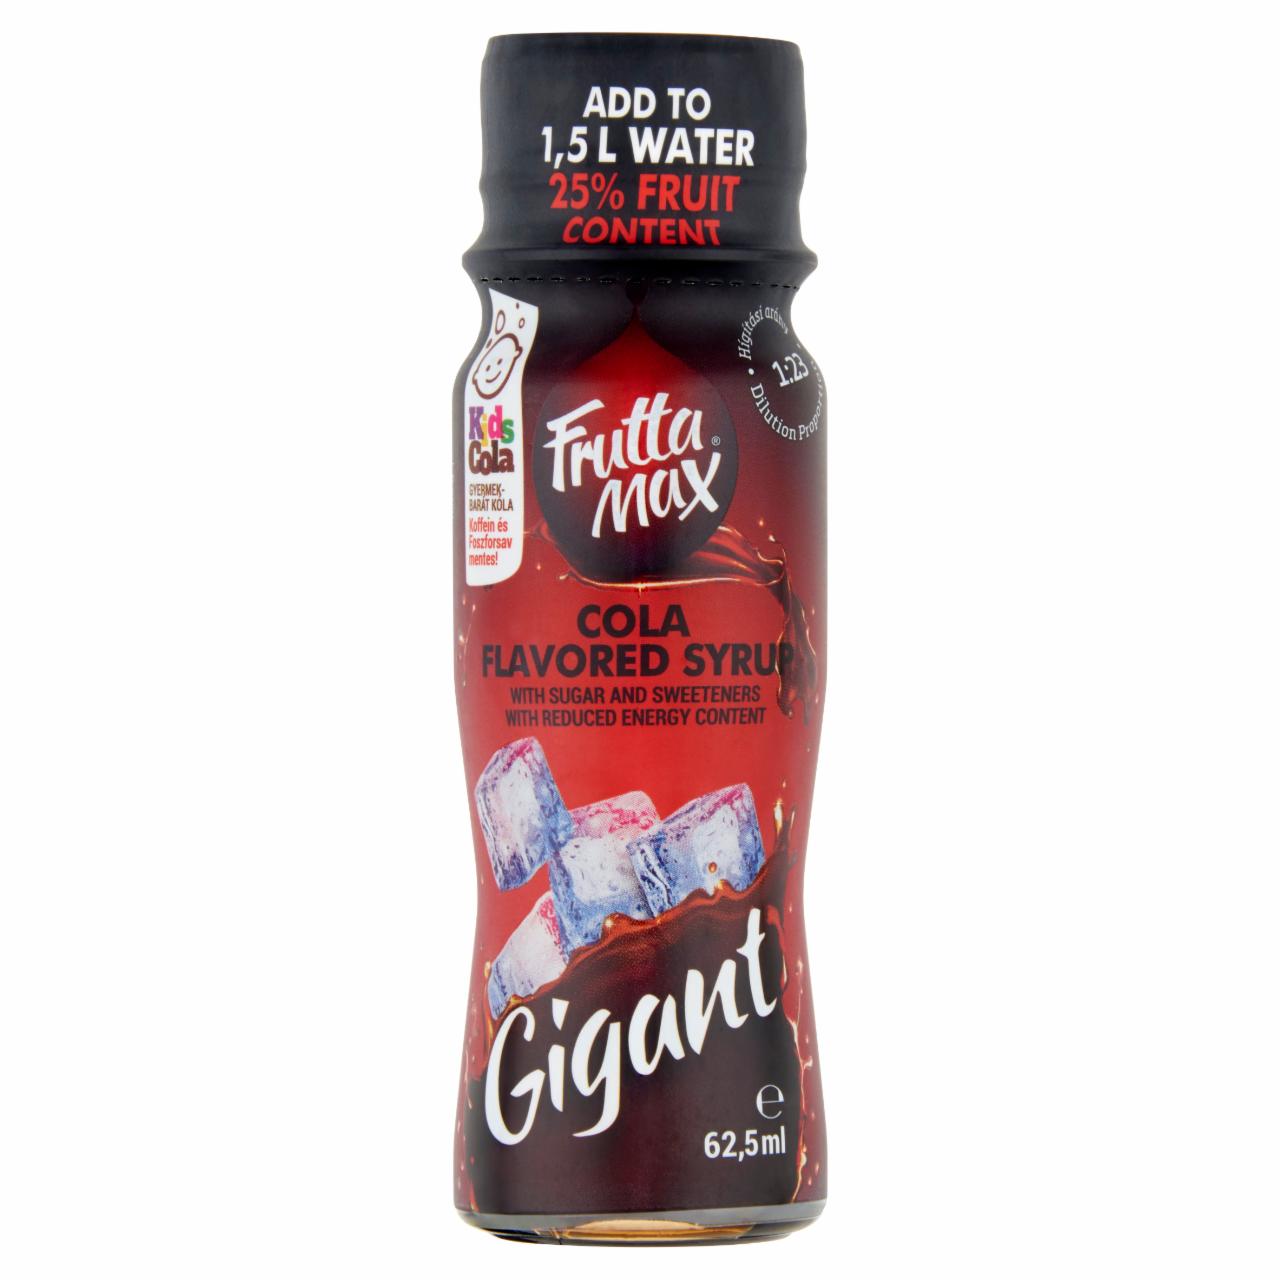 Képek - FruttaMax Gigant cola ízű szörp csökkentett energiatartalommal 62,5 ml